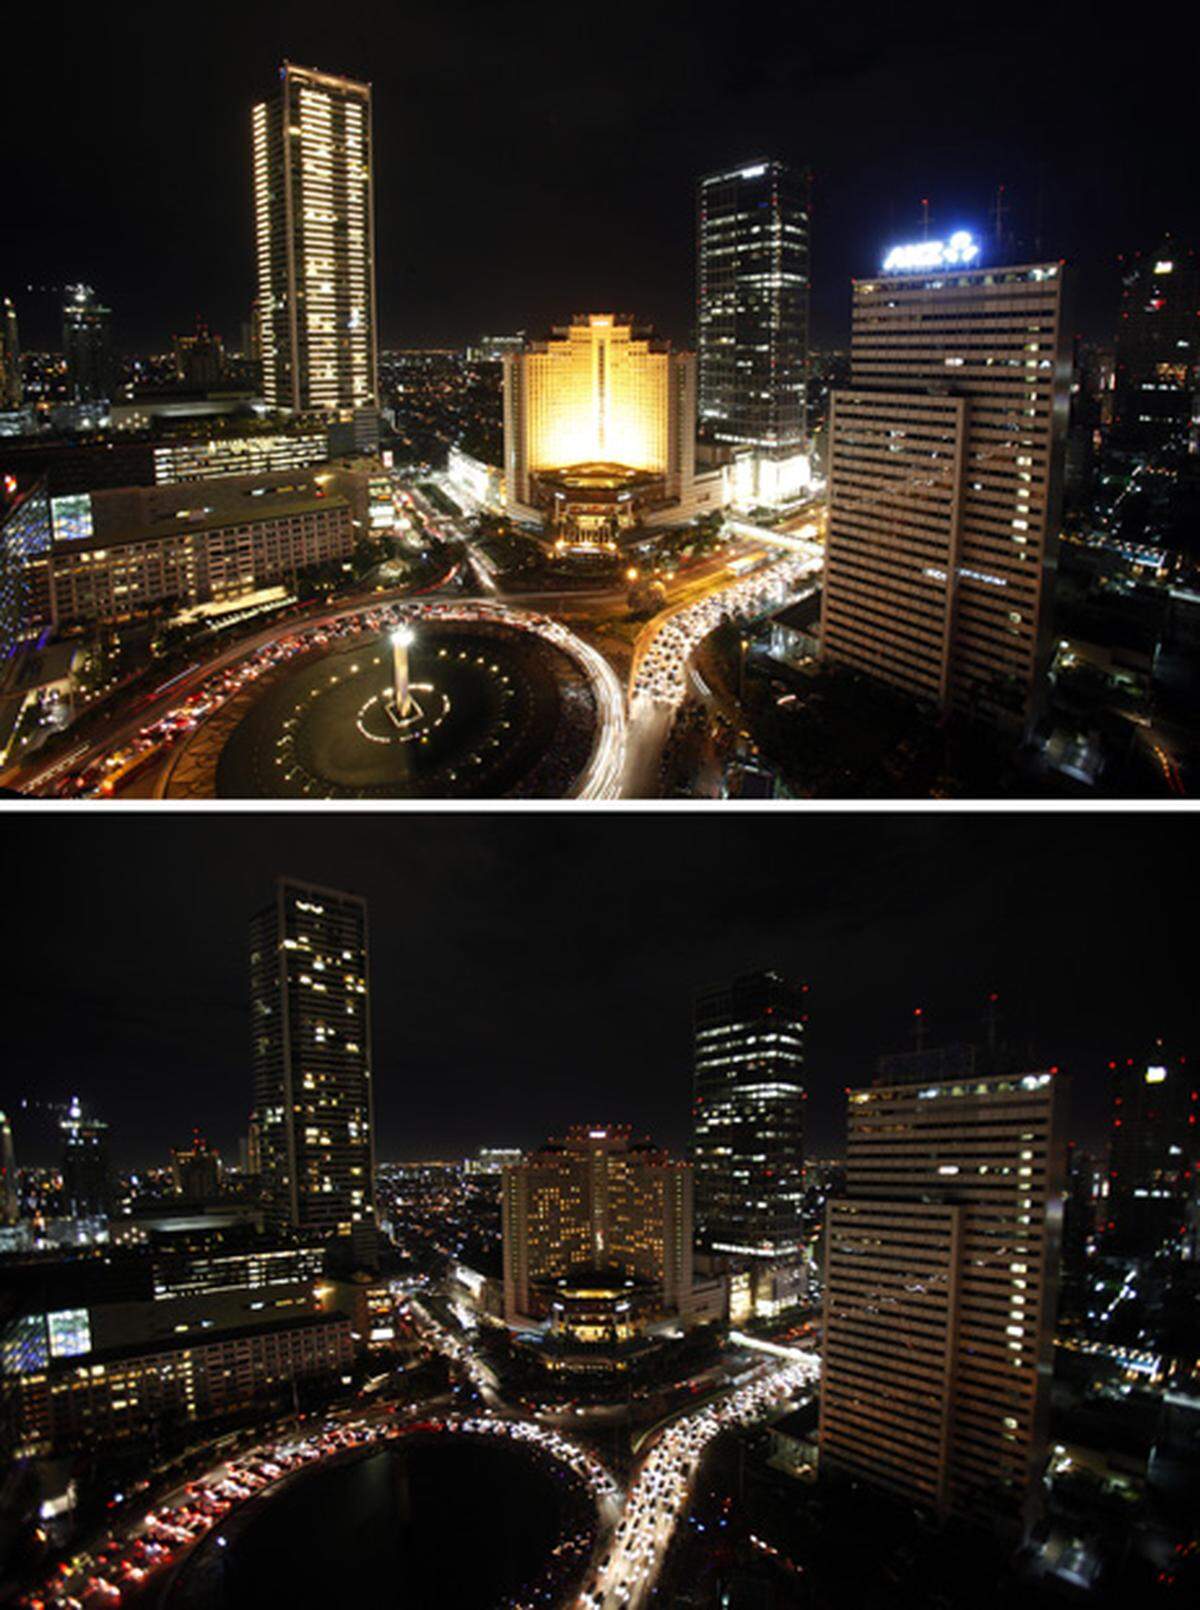 Jakarta bei Nacht und während der "Earth Hour".